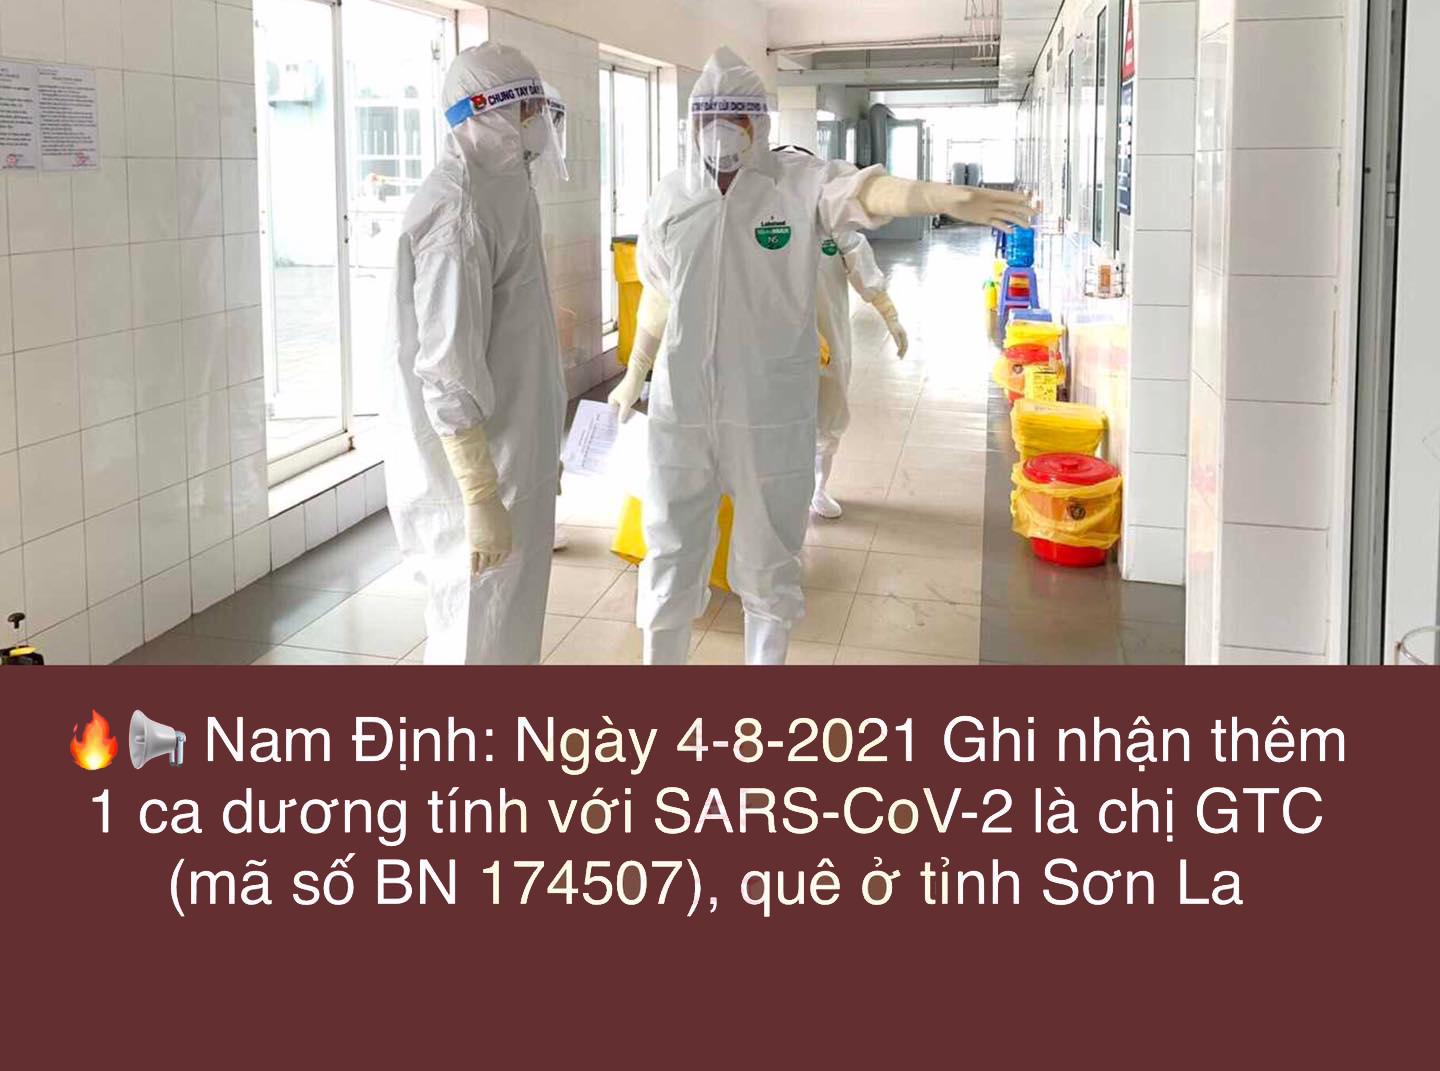 Nam Định : Ghi nhận thêm 1 ca dương tính với SARS-CoV-2